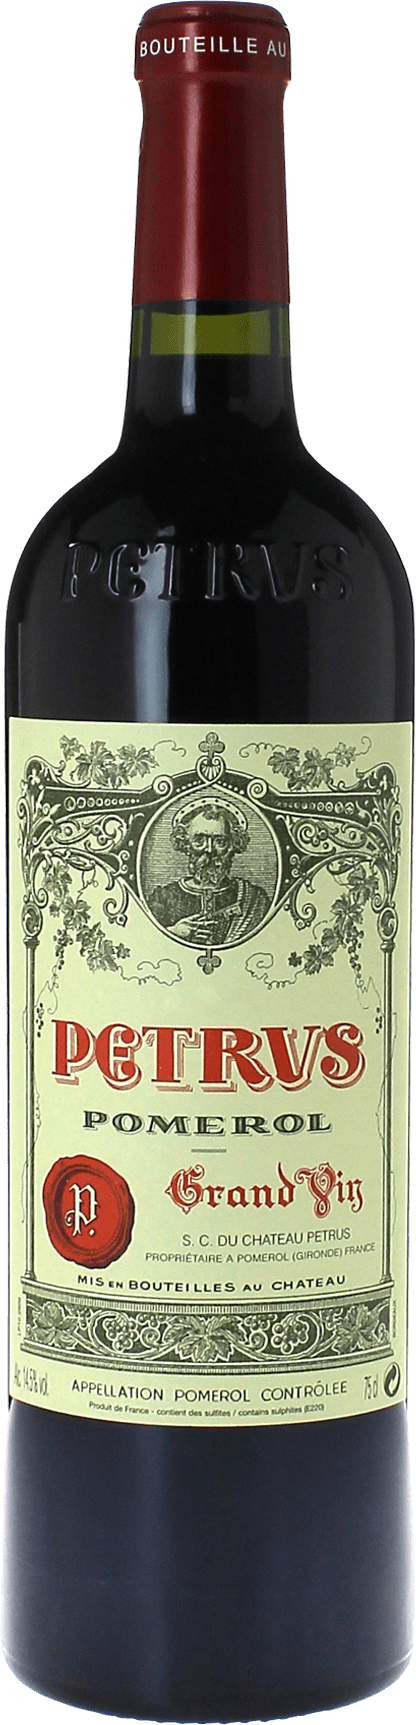 Petrus 2009  Pomerol, Bordeaux rouge